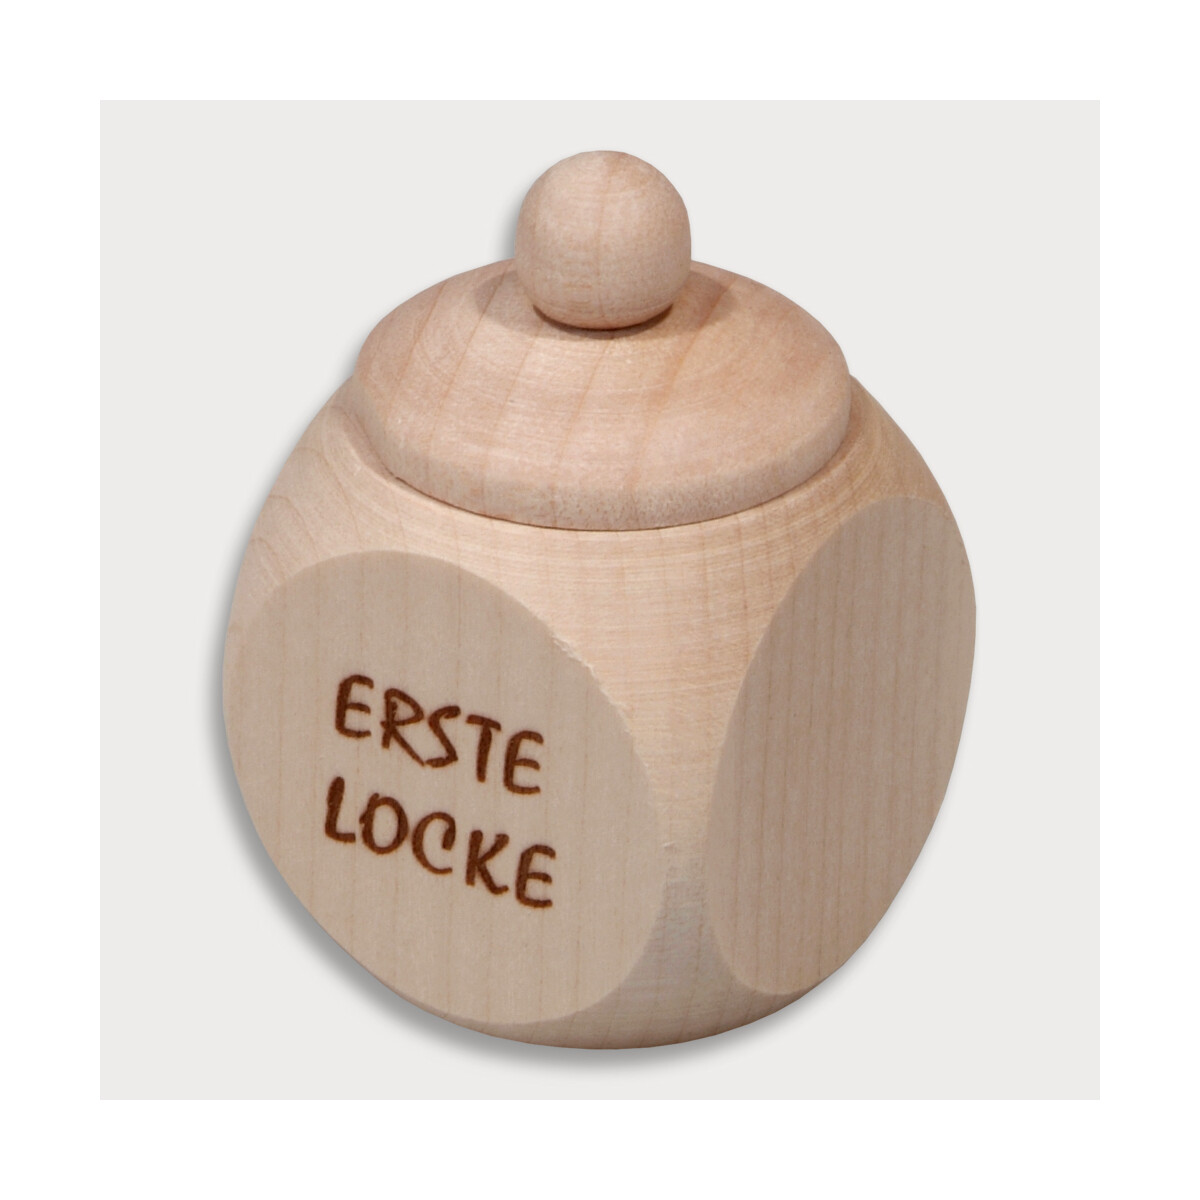 Holzdose Schraubverschluss "Erste Locke"...